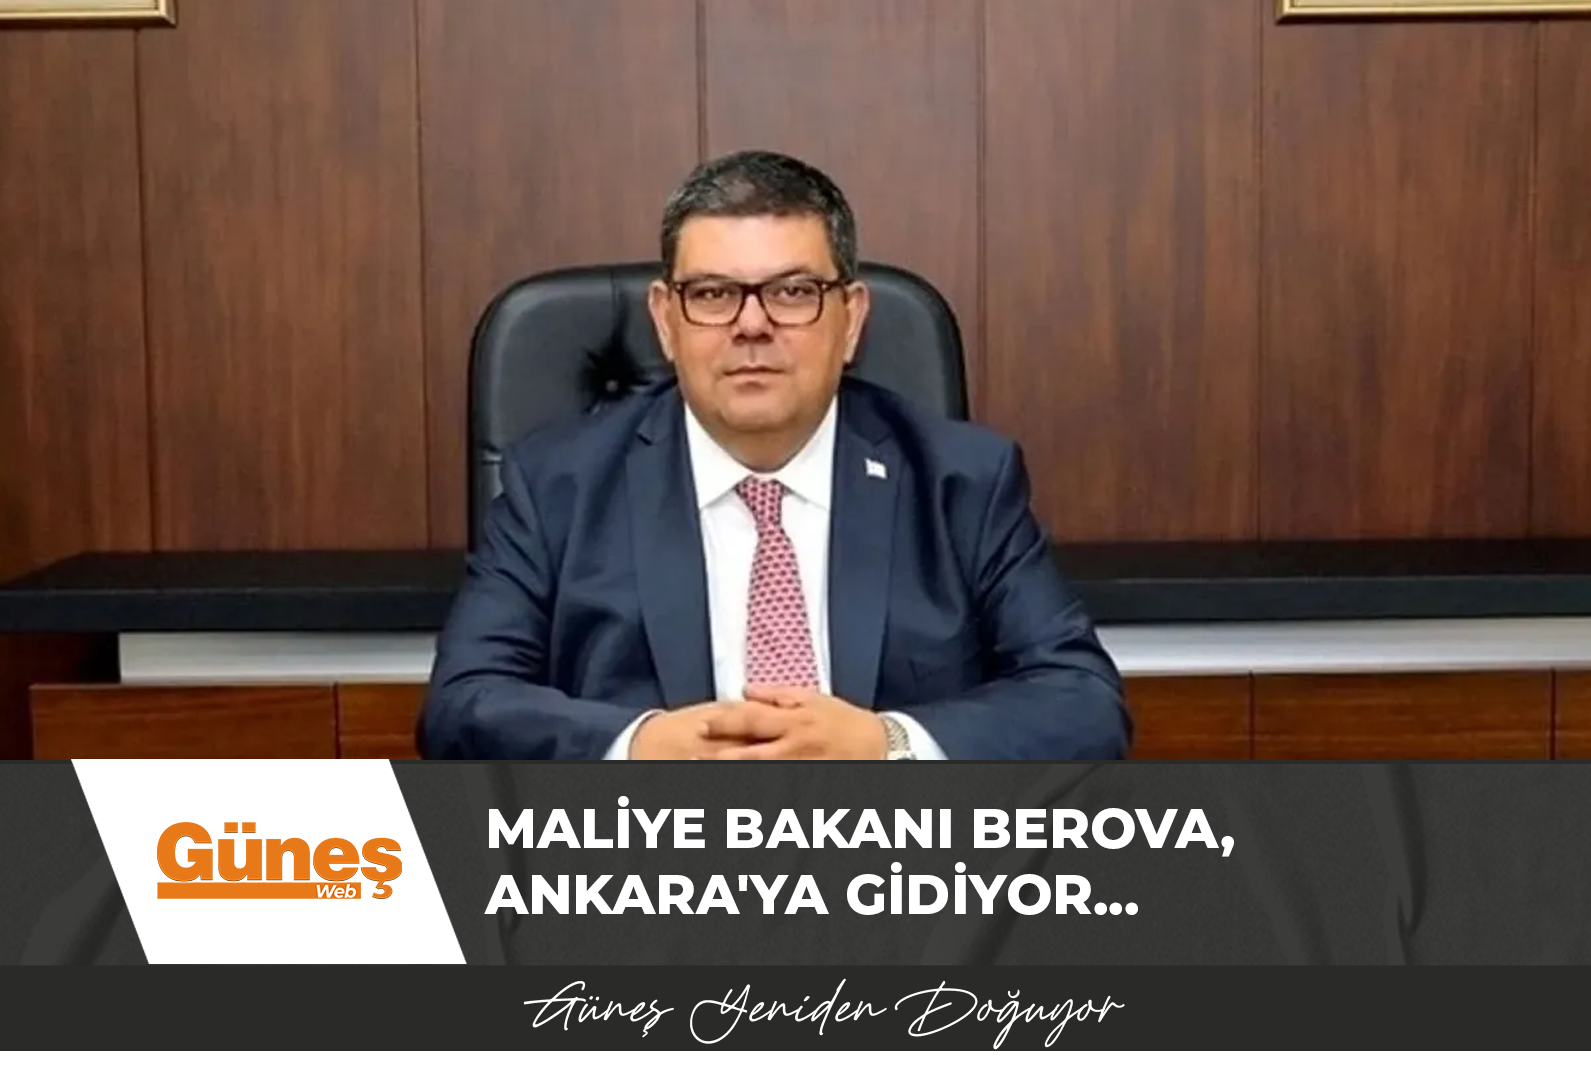 Maliye Bakanı Berova, Ankara’ya gidiyor…